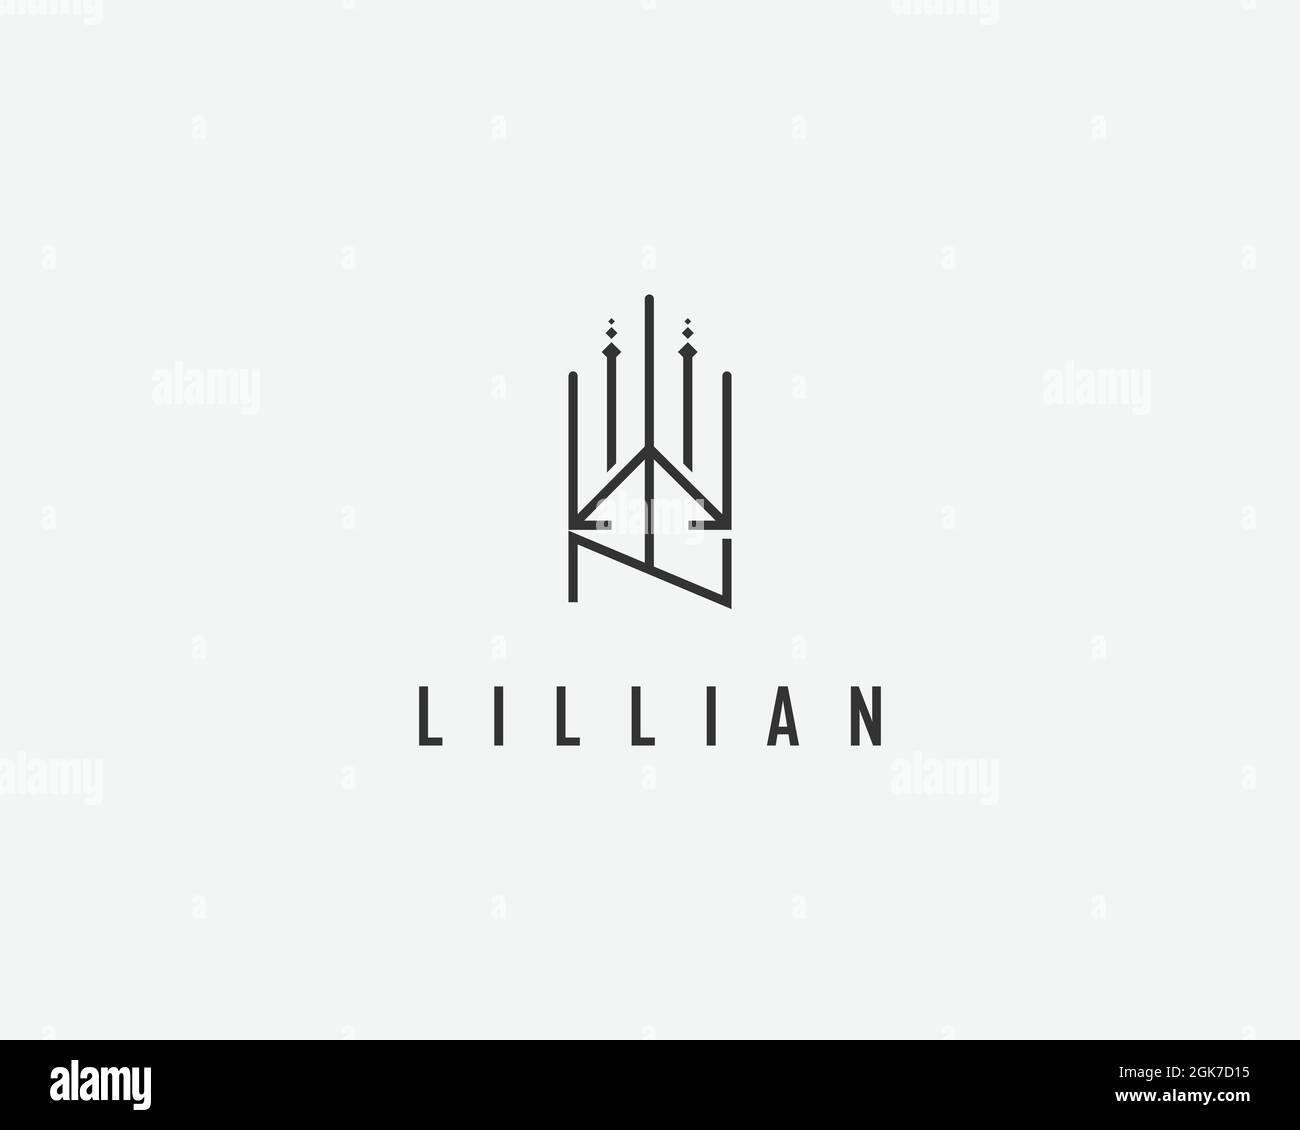 logo name Lillian usable logo design for private logo, business name card web icon, social media icon Stock Vector